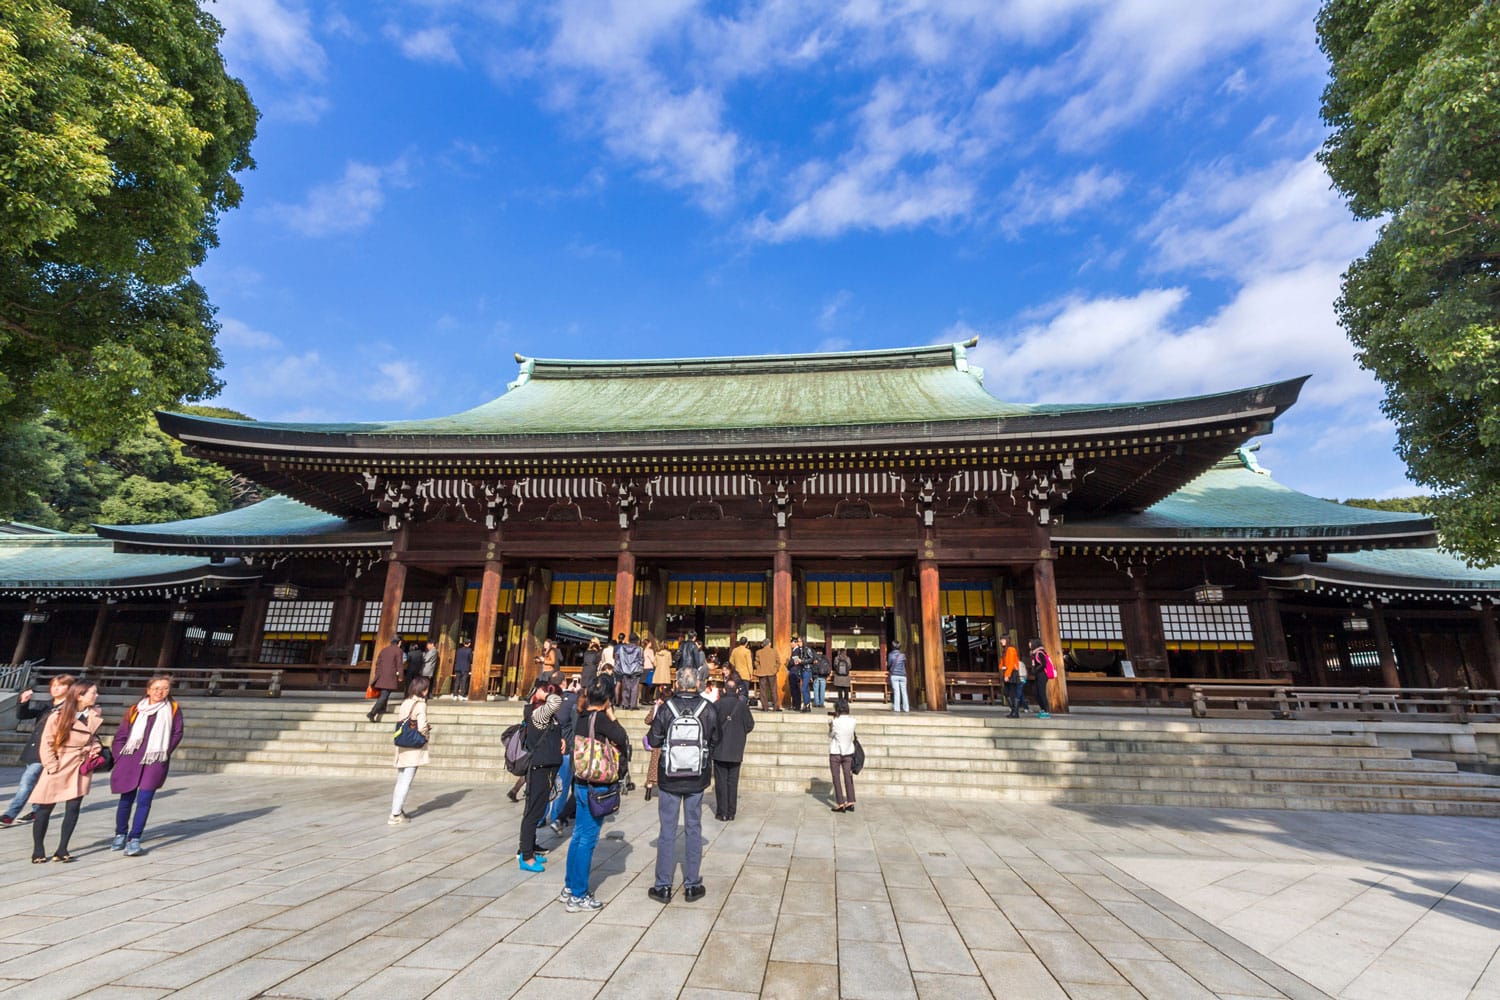 Ναός Meiji, που βρίσκεται στη Shibuya, Τόκιο, Ιαπωνία